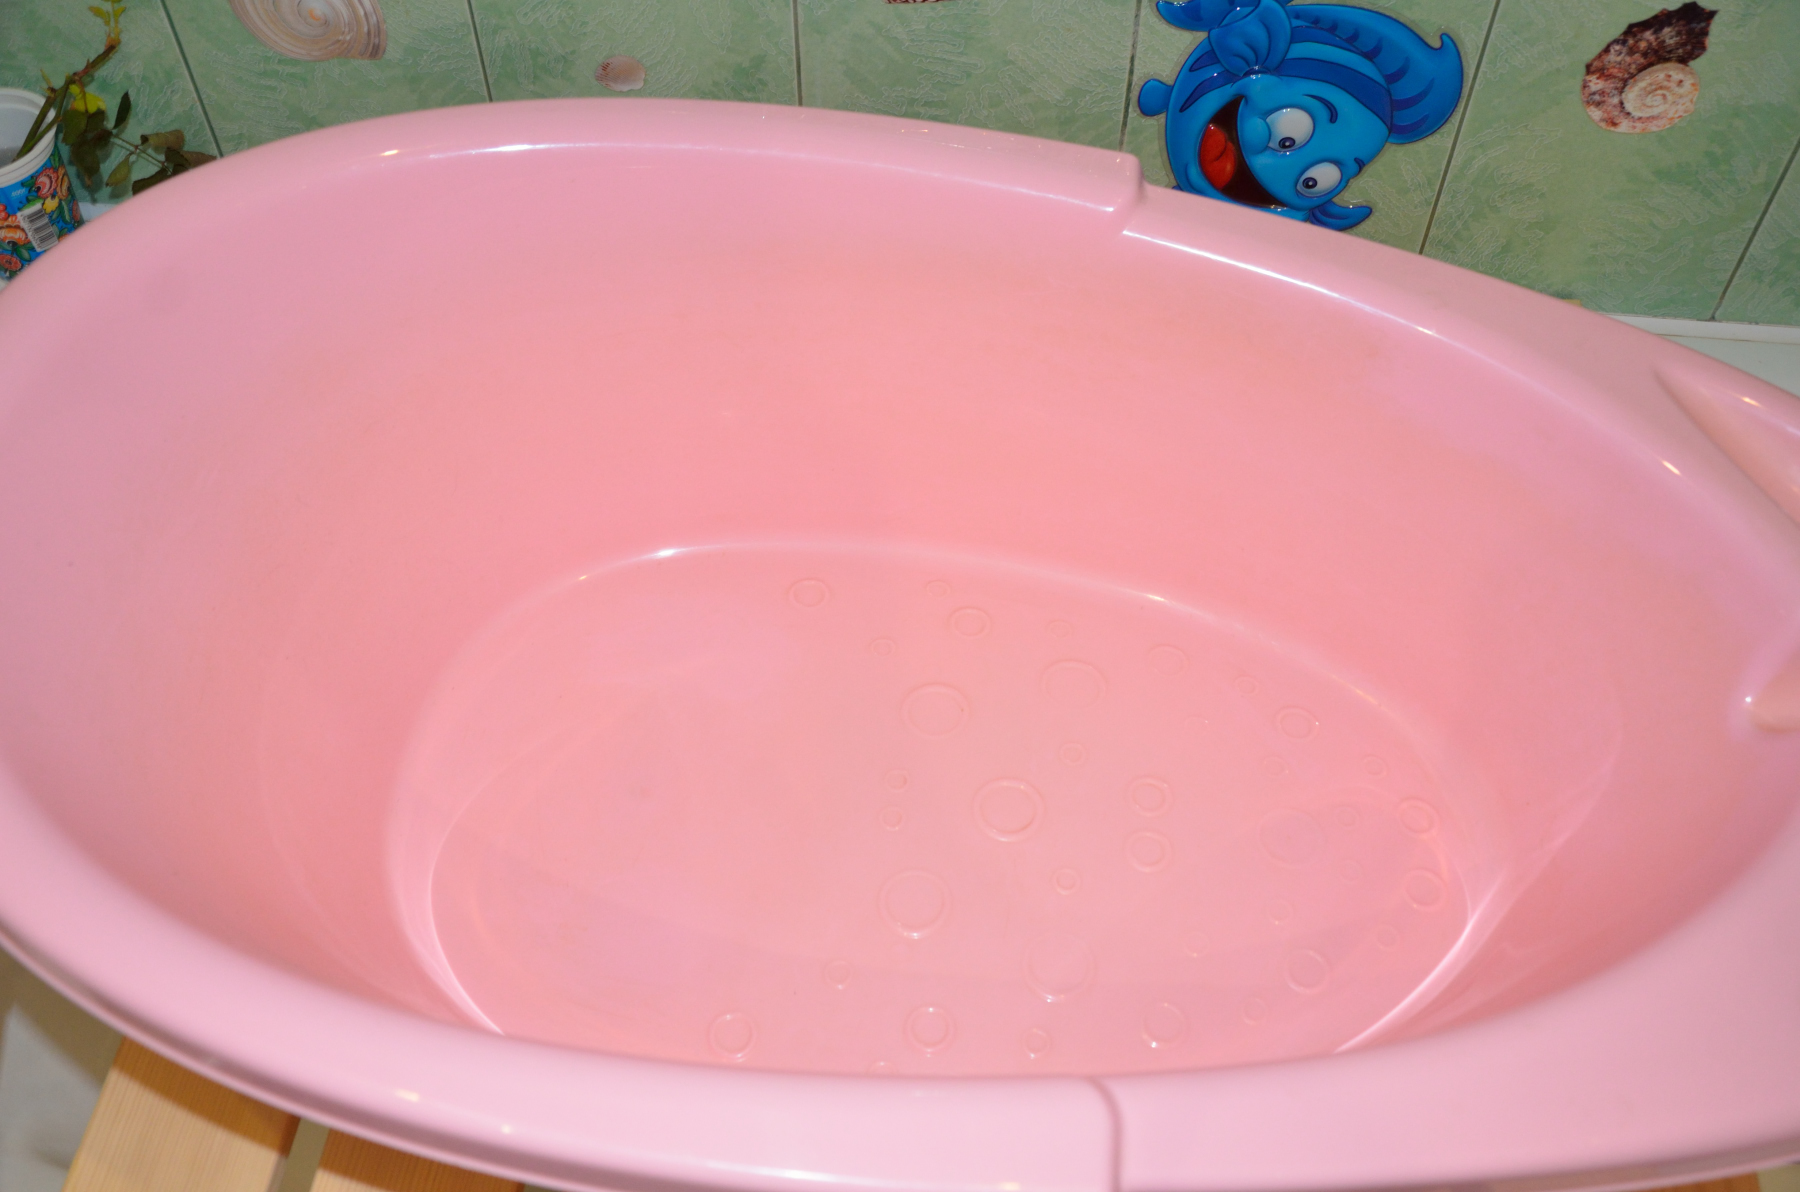 Ванночка детская. Продам старую ванночку для детей в Москве Московская область. Каменск-Уральский.авито купить ванночку для малыша. Авито ванночка для купания